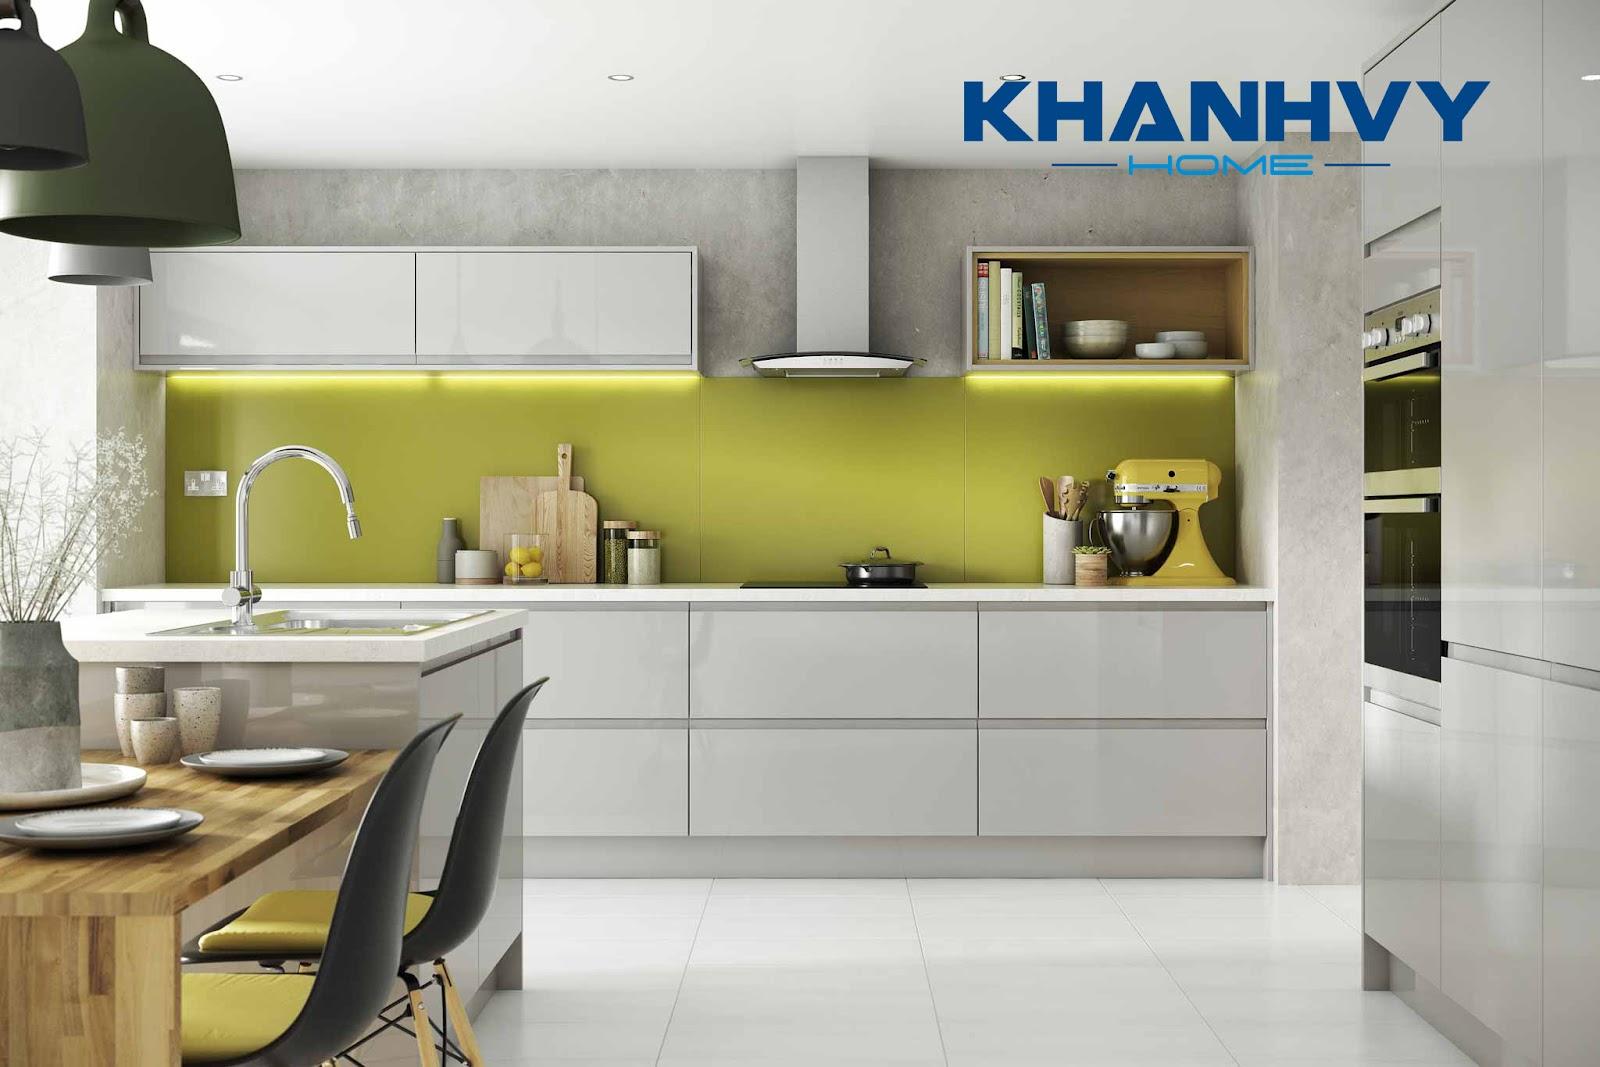 Tủ bếp giúp không gian bếp trở nên sang trọng, hiện đại và đẹp tinh tế